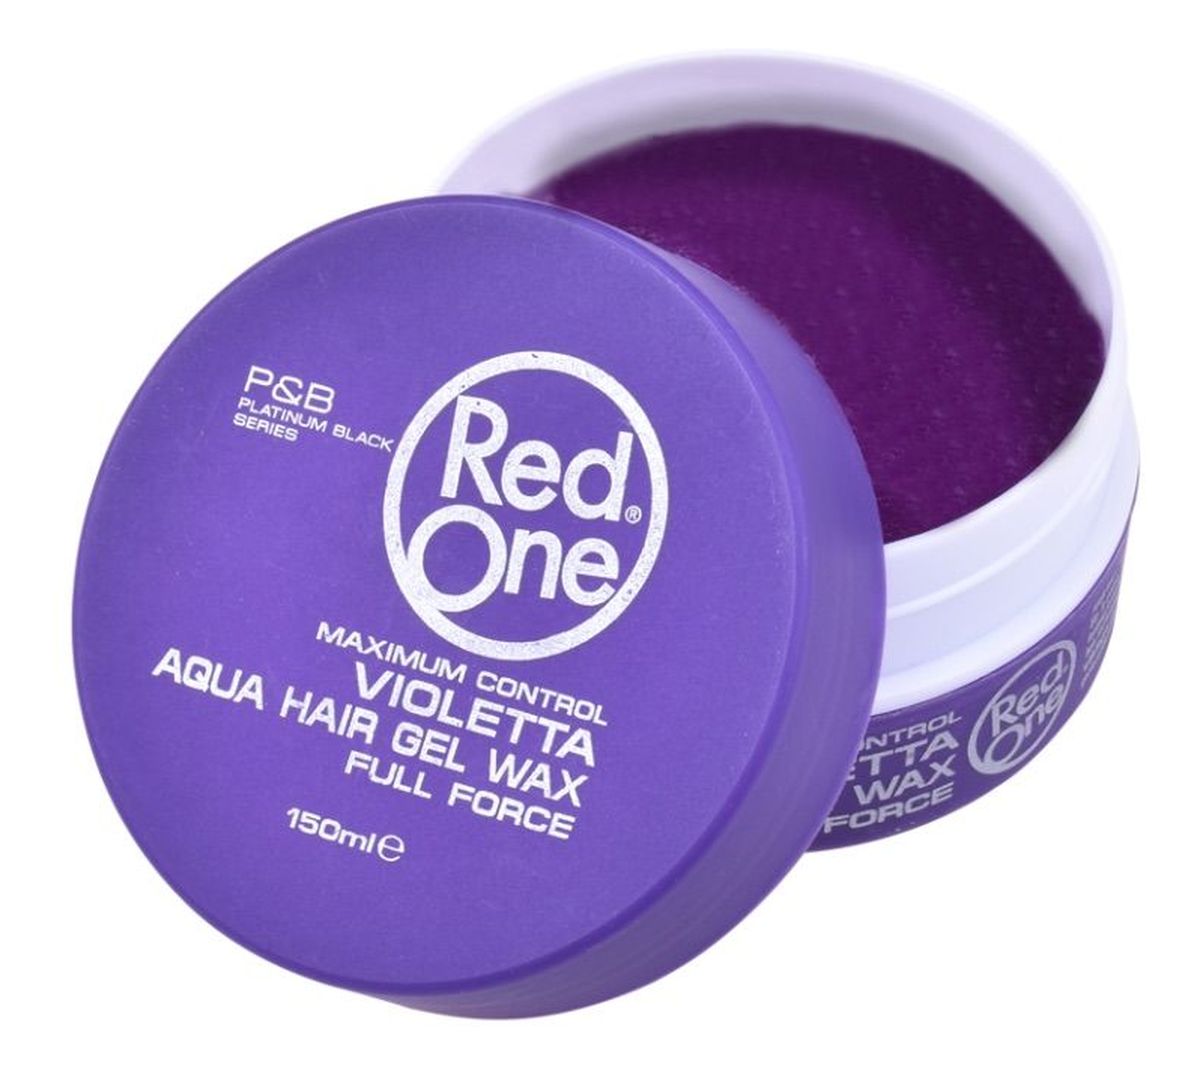 Aqua hair gel wax full force wosk do włosów violetta